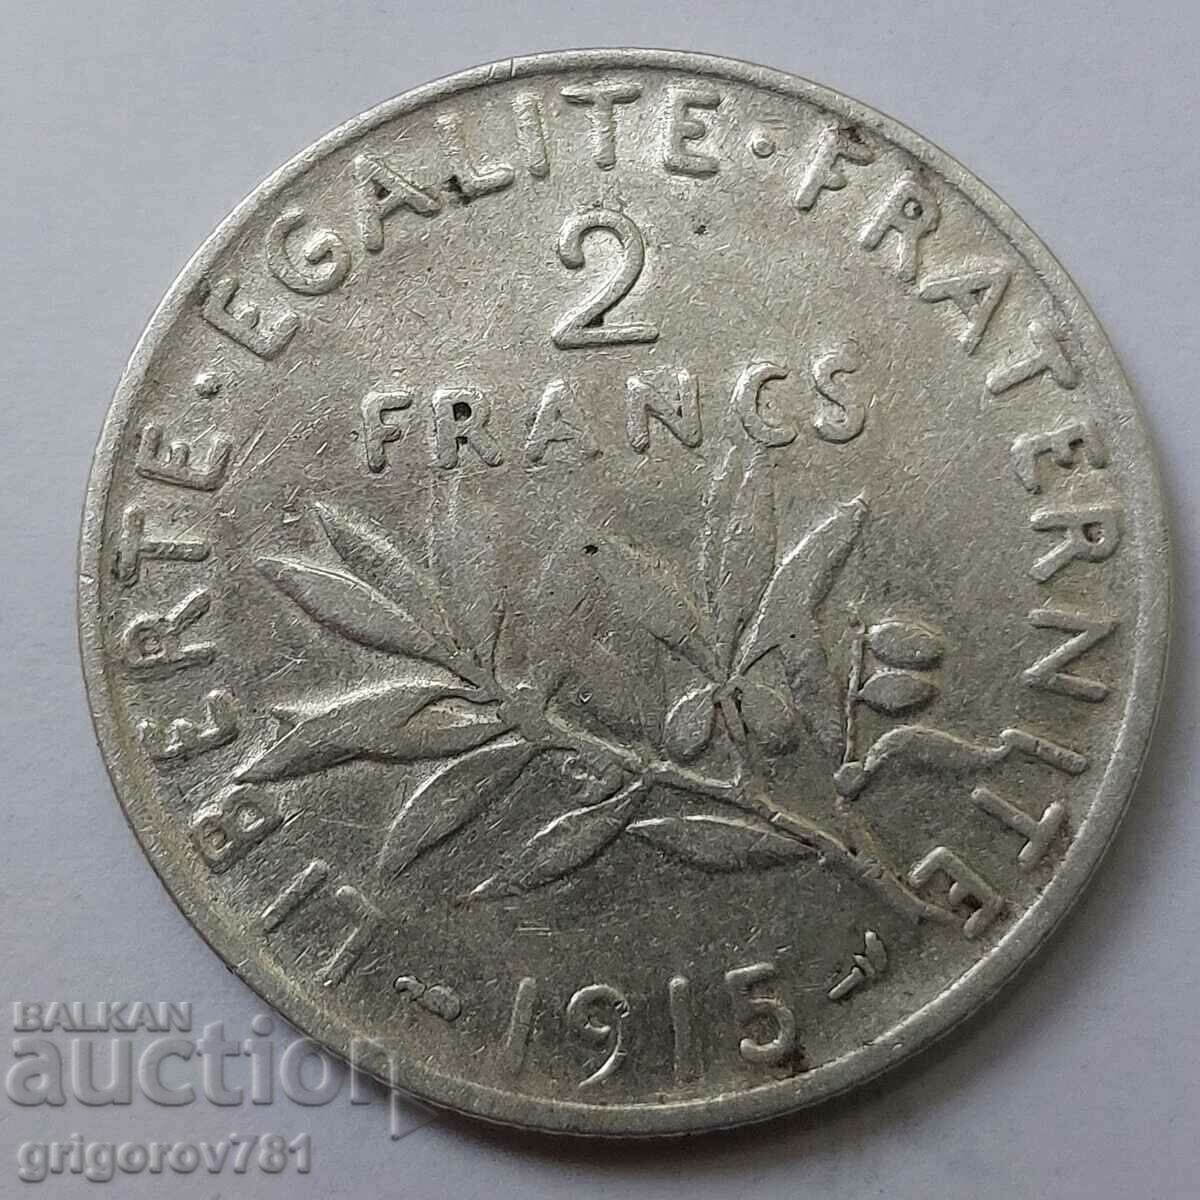 2 Franci Argint Franta 1915 - Moneda de argint #53